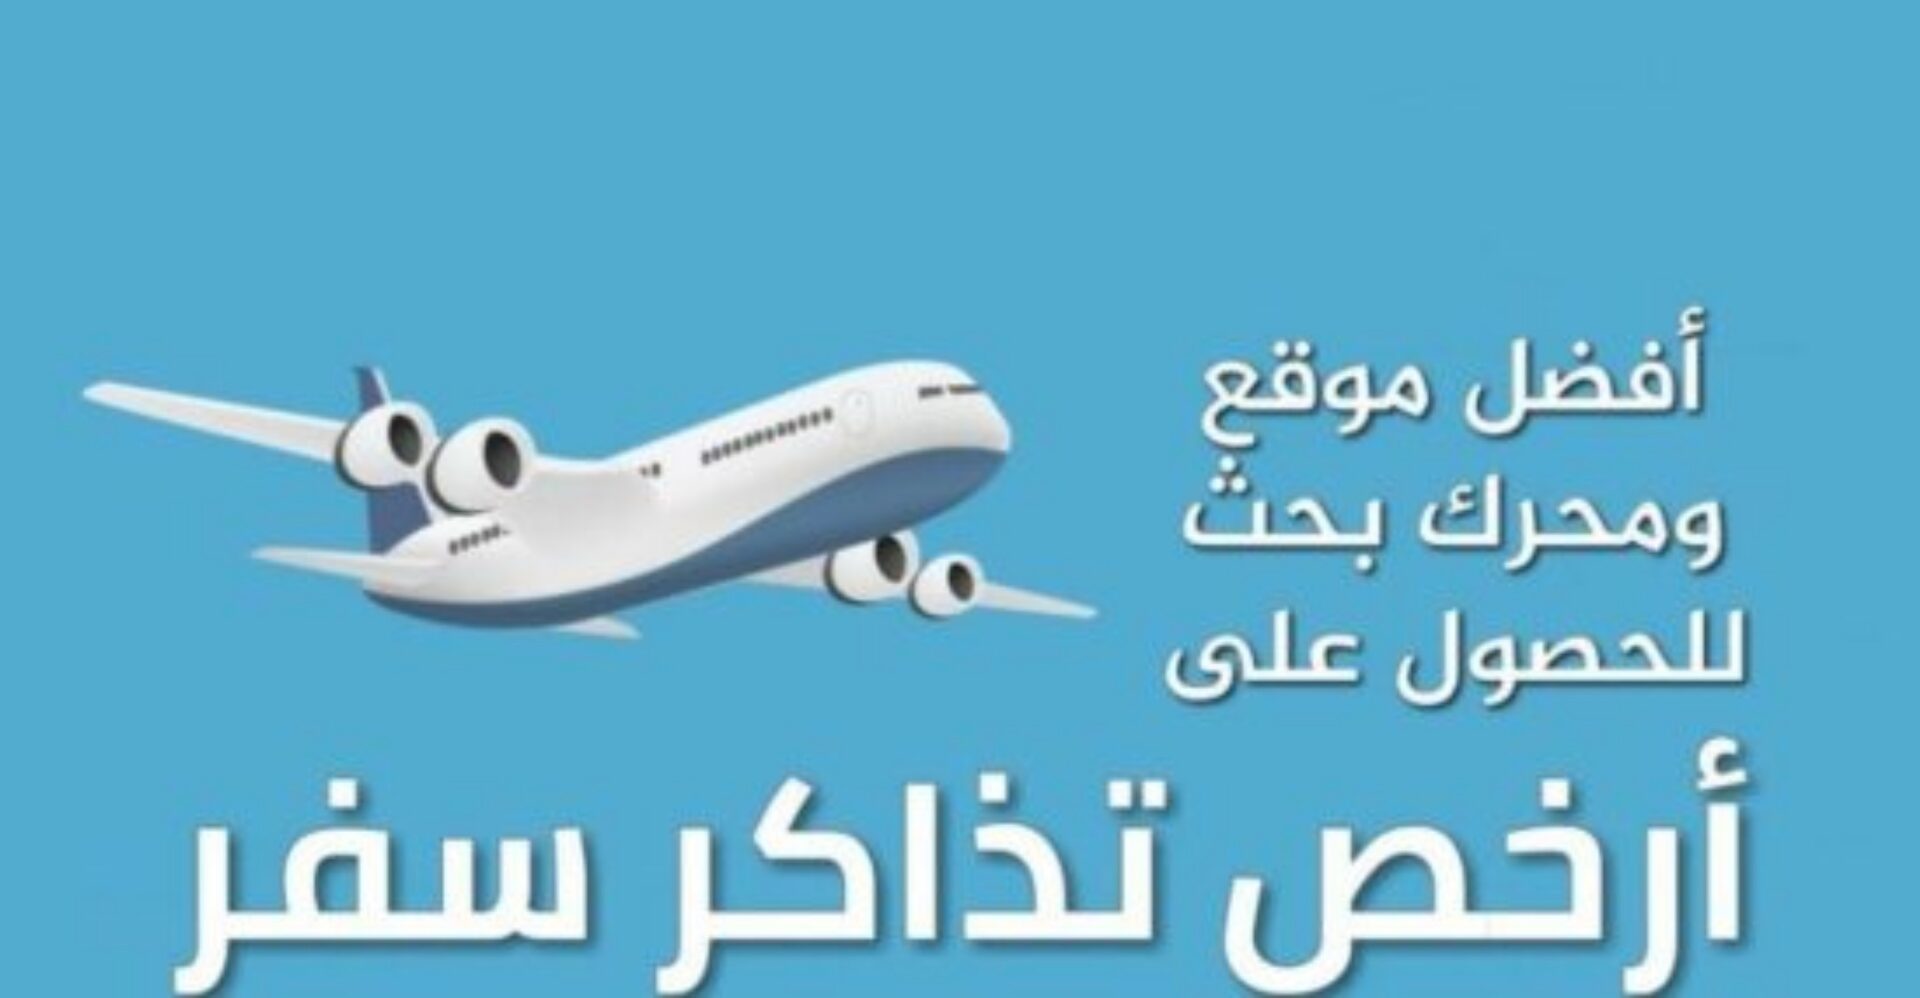 حجز تذاكر سفر رخيصة من السعودية ..أفضل مواقع حجز طيران..أفضل وقت لحجز طيران